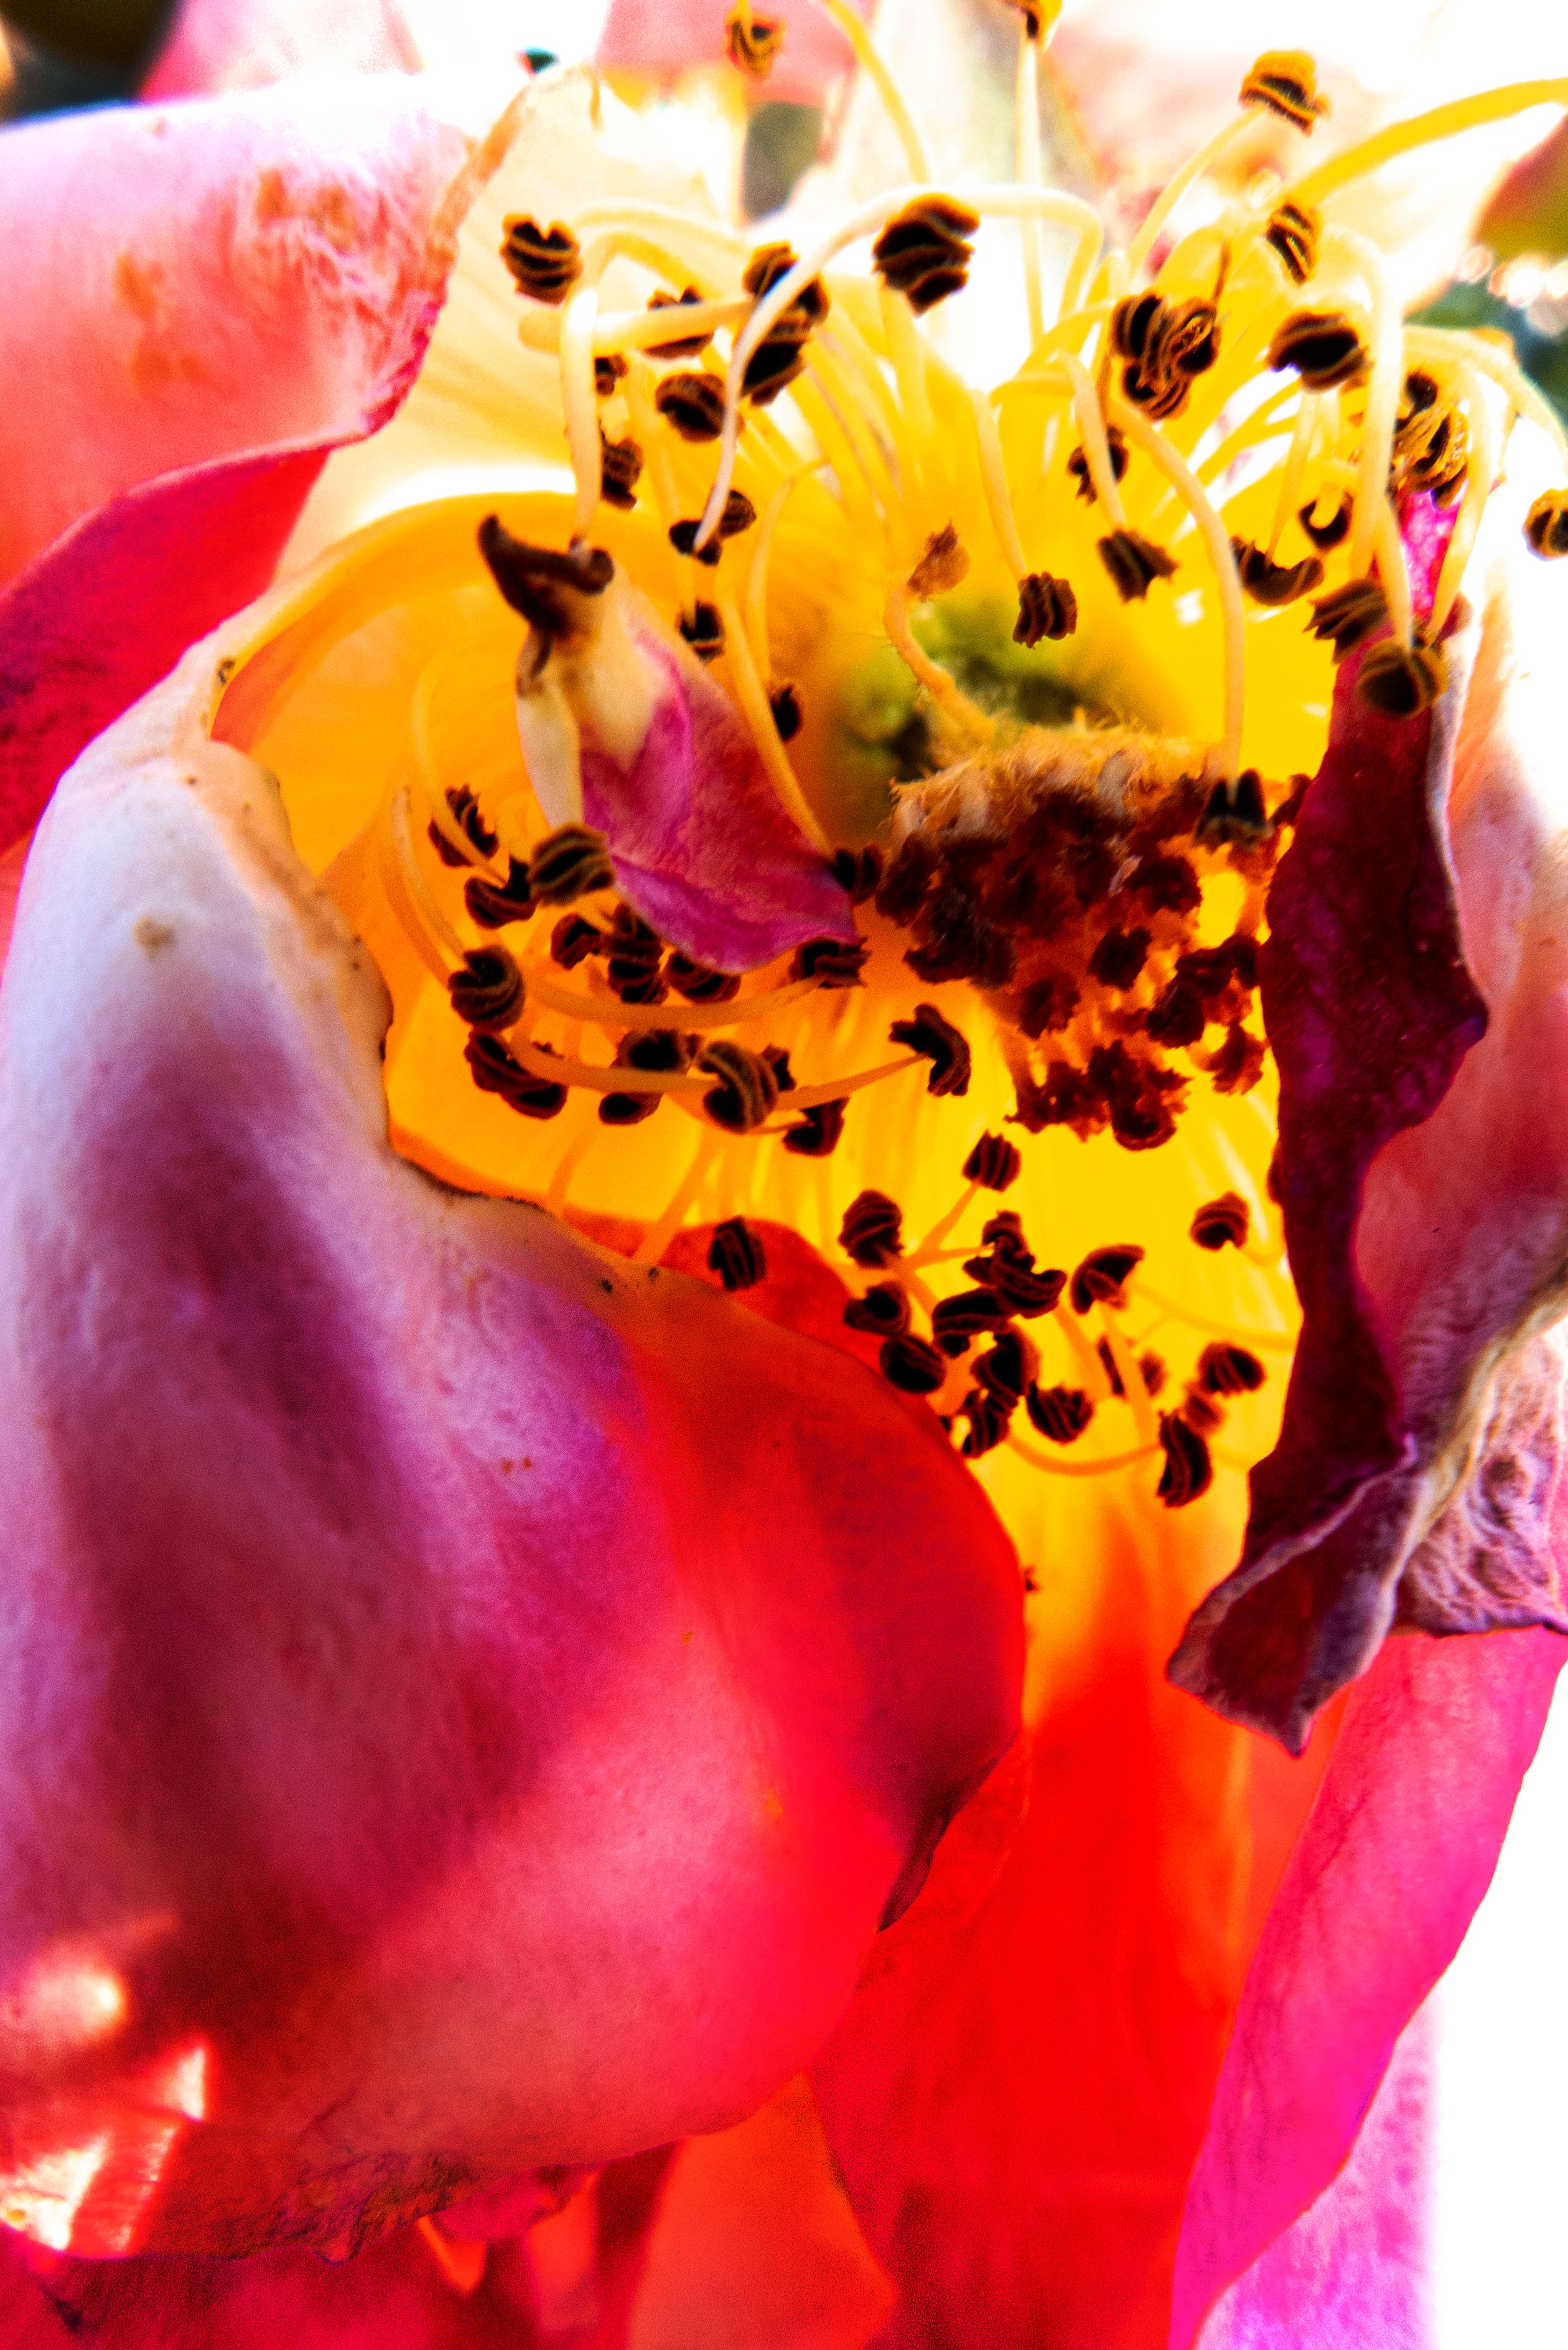 Detailaufnahme einer Blüte in kräftigem Rot und Gelb, in deren Mitte sich kontrastreich die dunklen Staubblätter abheben